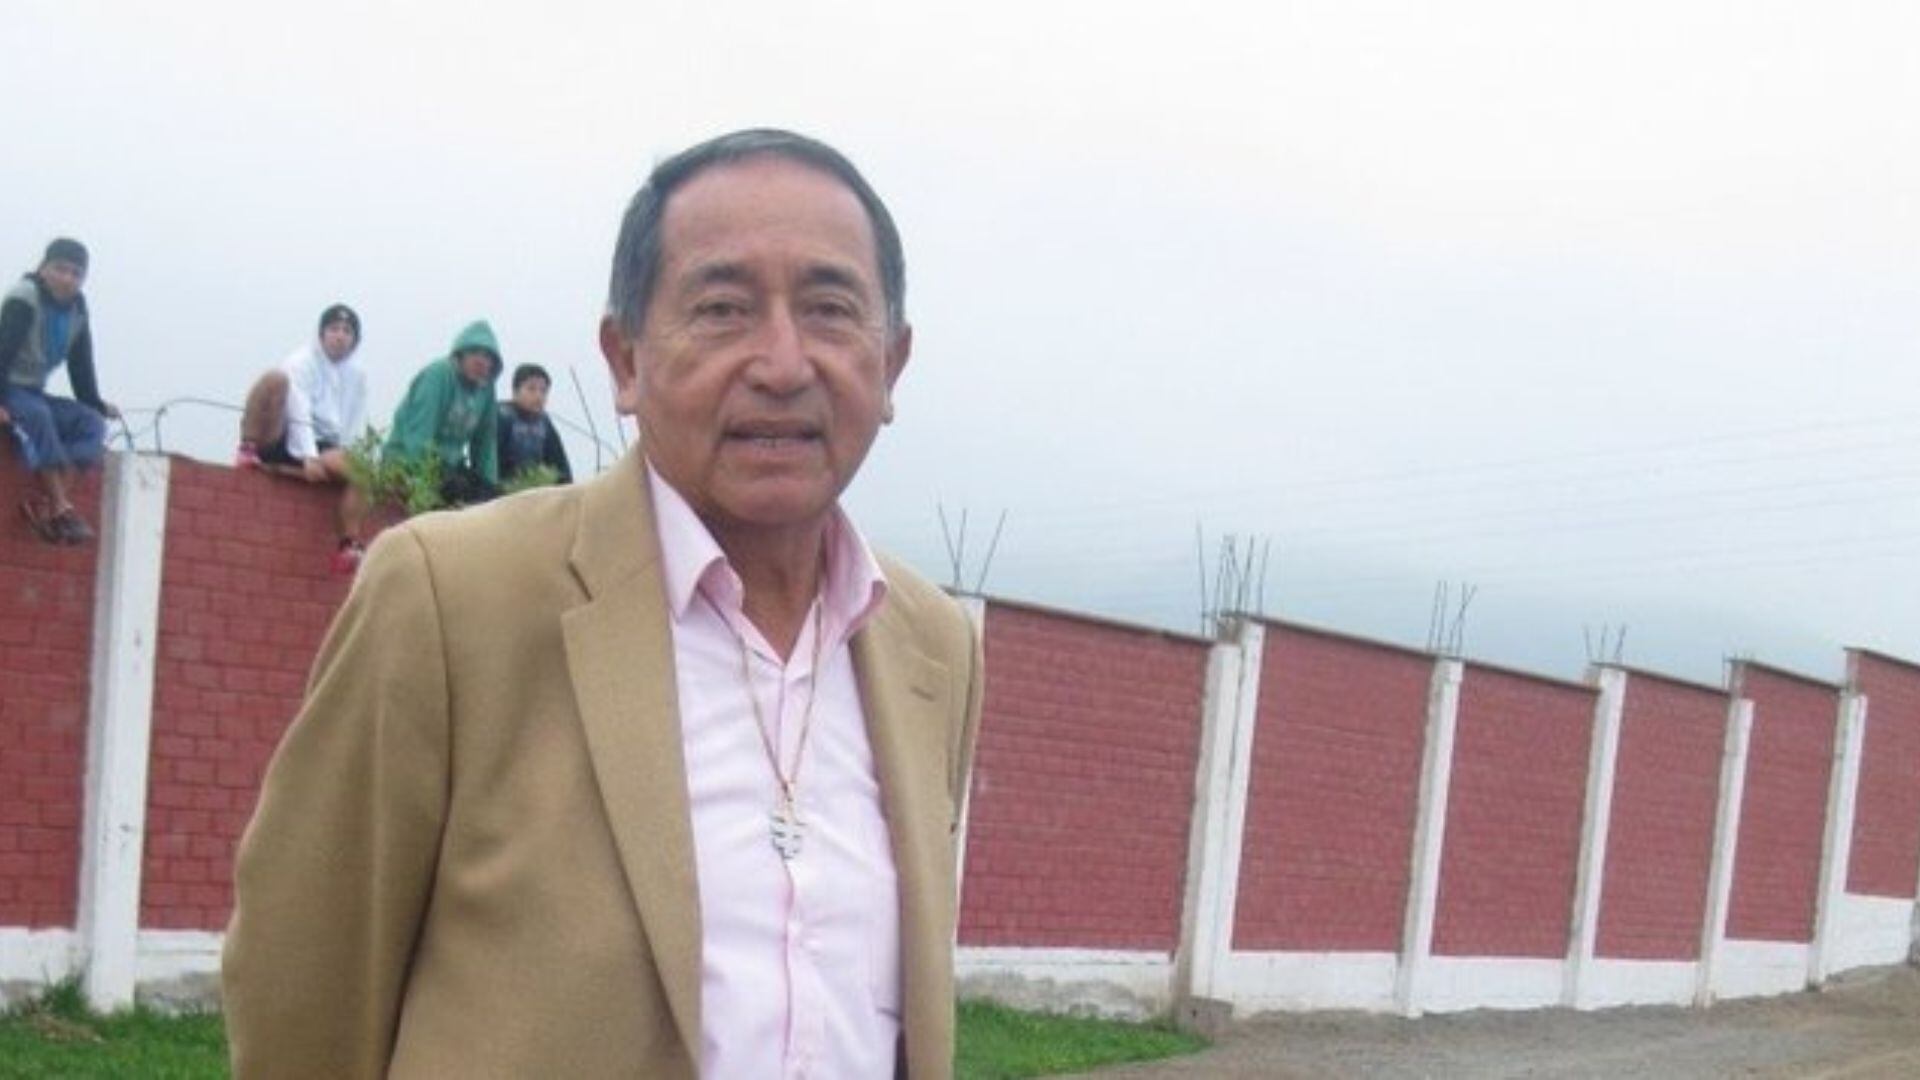 Moisés Barack, de 80 años, fue entrenador de la selección peruana en las Eliminatorias México 86. - Crédito: Difusión